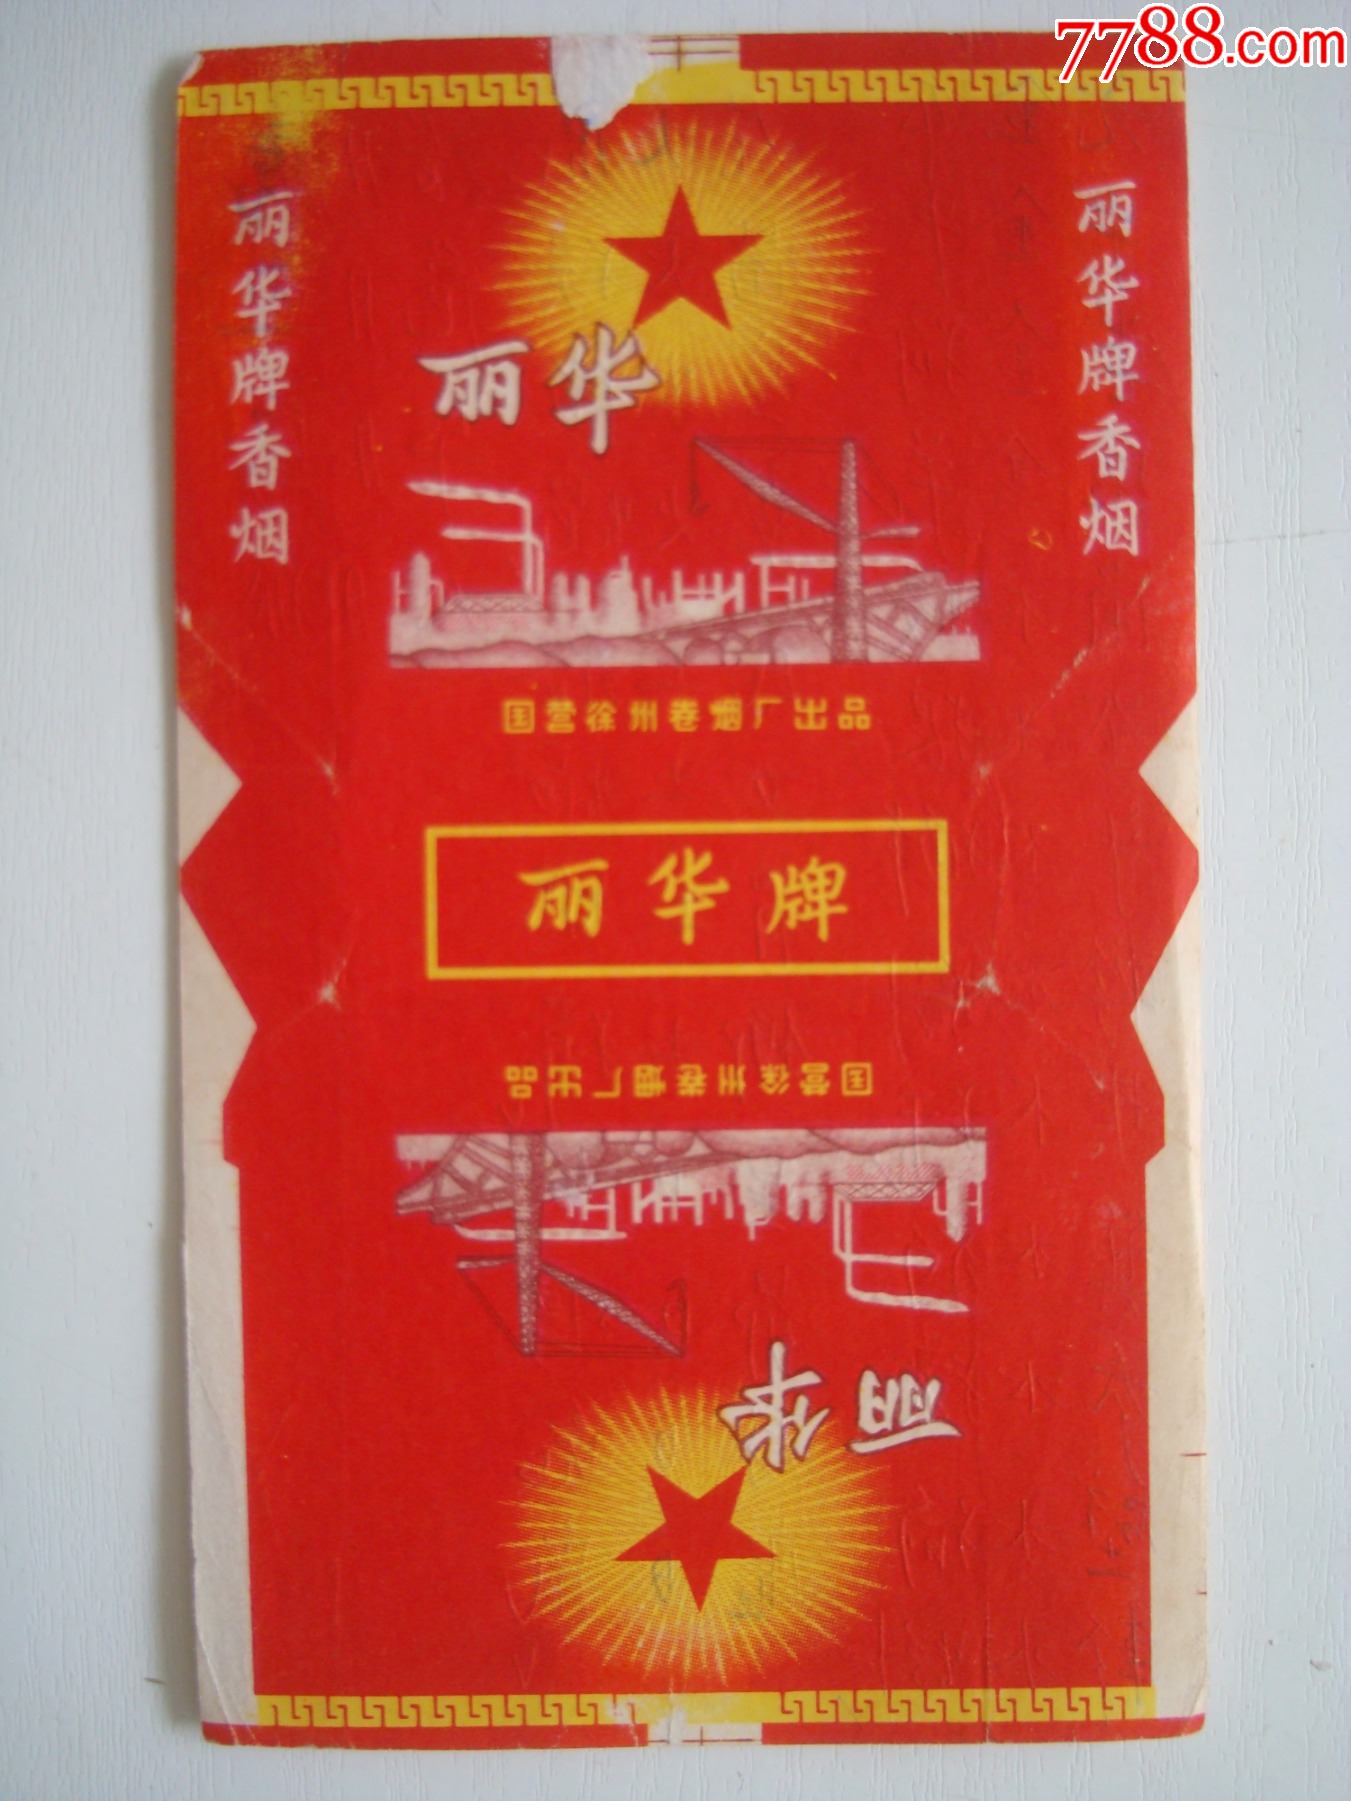 丽华――国营徐州卷烟厂出品――70s标